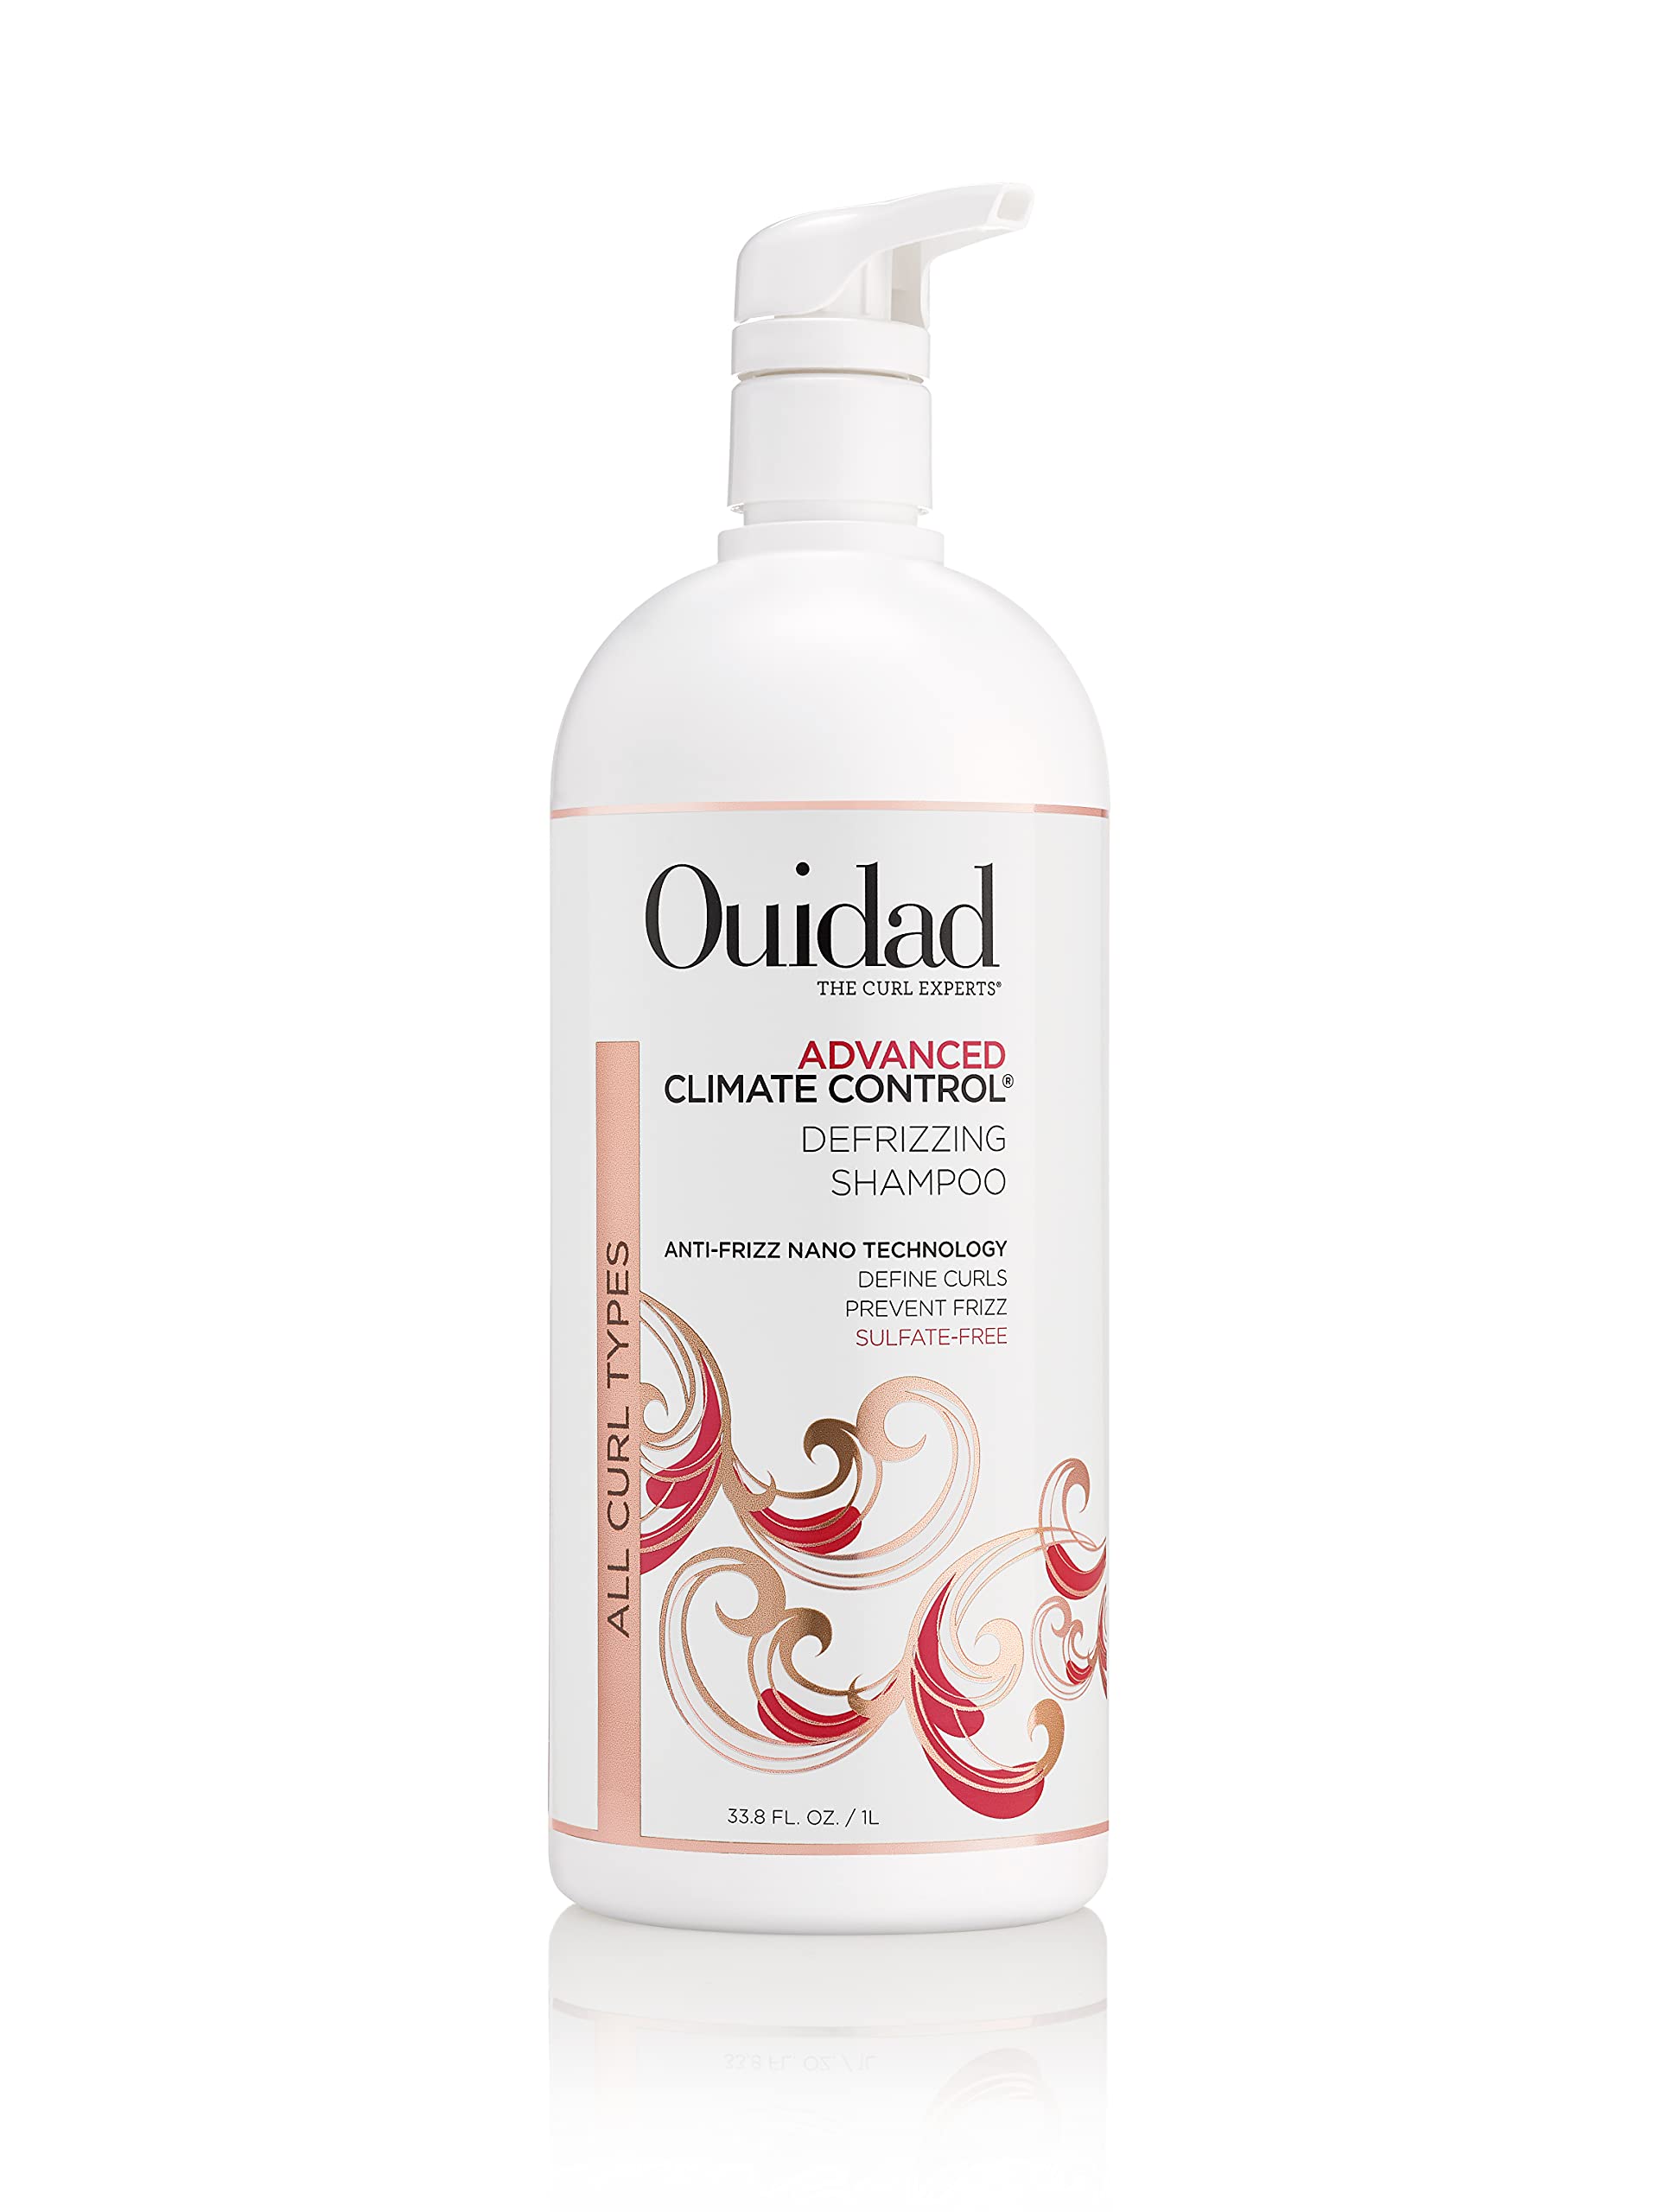 Ouidad Advanced Climate Control Defrizzing Shampoo, 33.8 Fl Oz